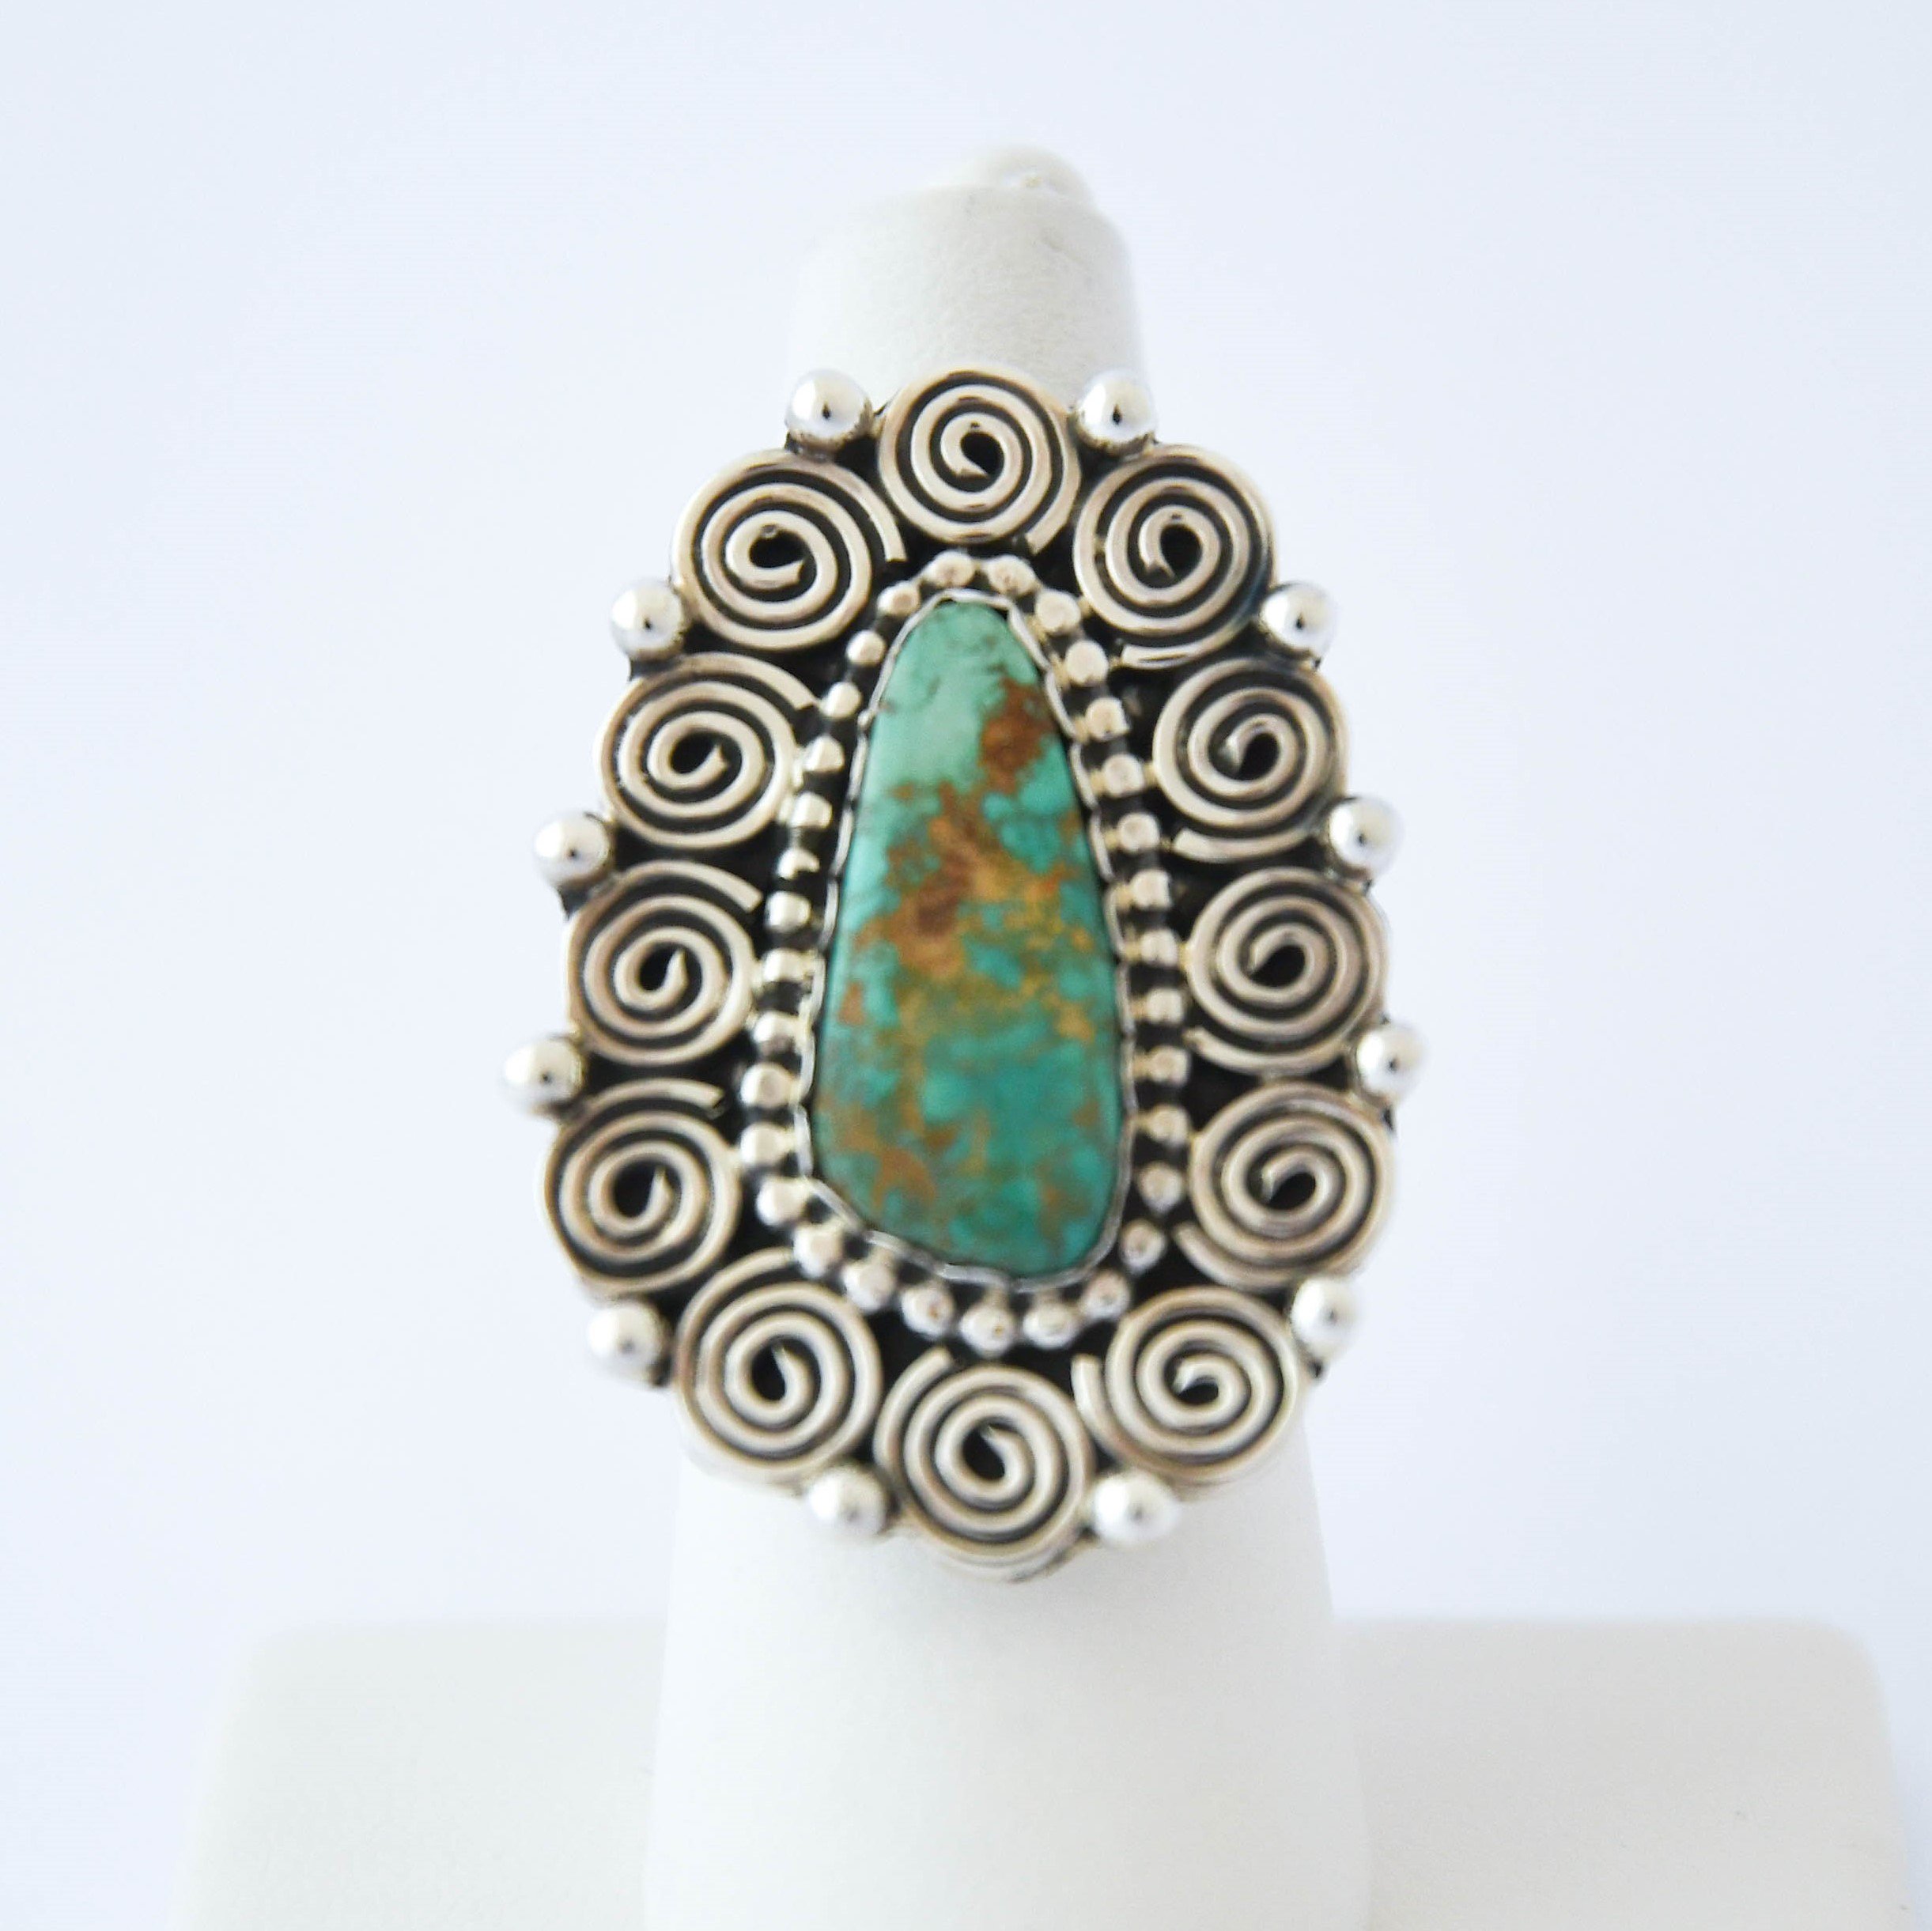 リング [Tonya June Rafael] - Native American Jewelry - Blue Moon